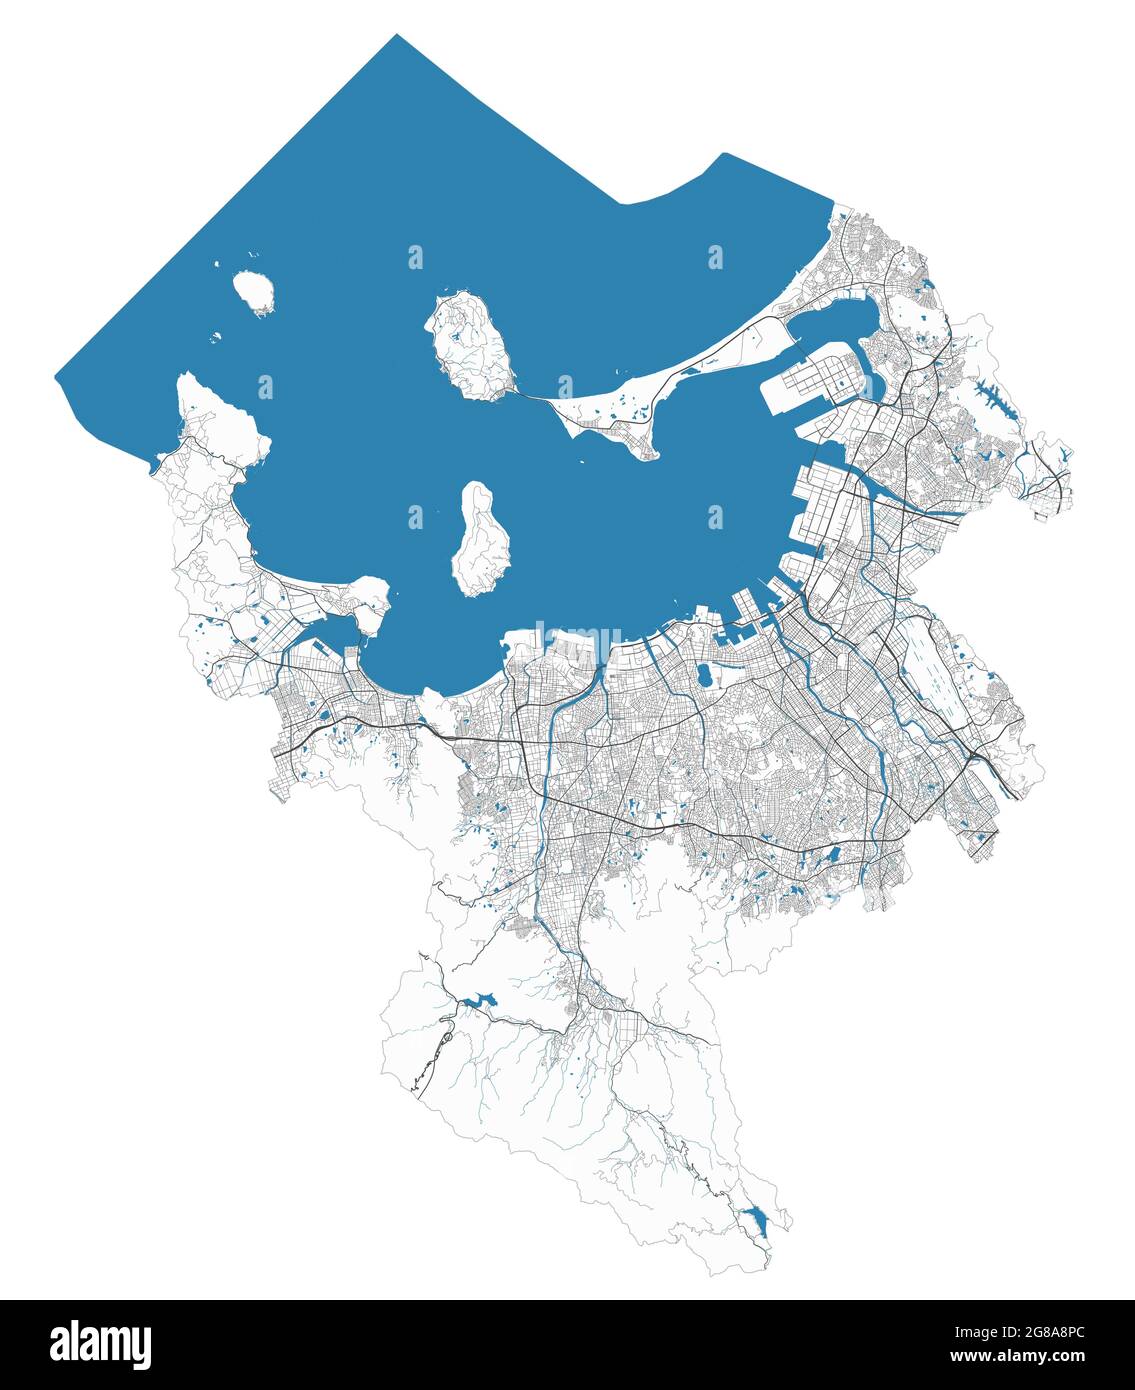 Mappa della città di Fukuoka. Mappa dettagliata area amministrativa, panorama terrestre. Illustrazione vettoriale priva di royalty. Mappa con autostrade, strade, fiumi. Touri Illustrazione Vettoriale